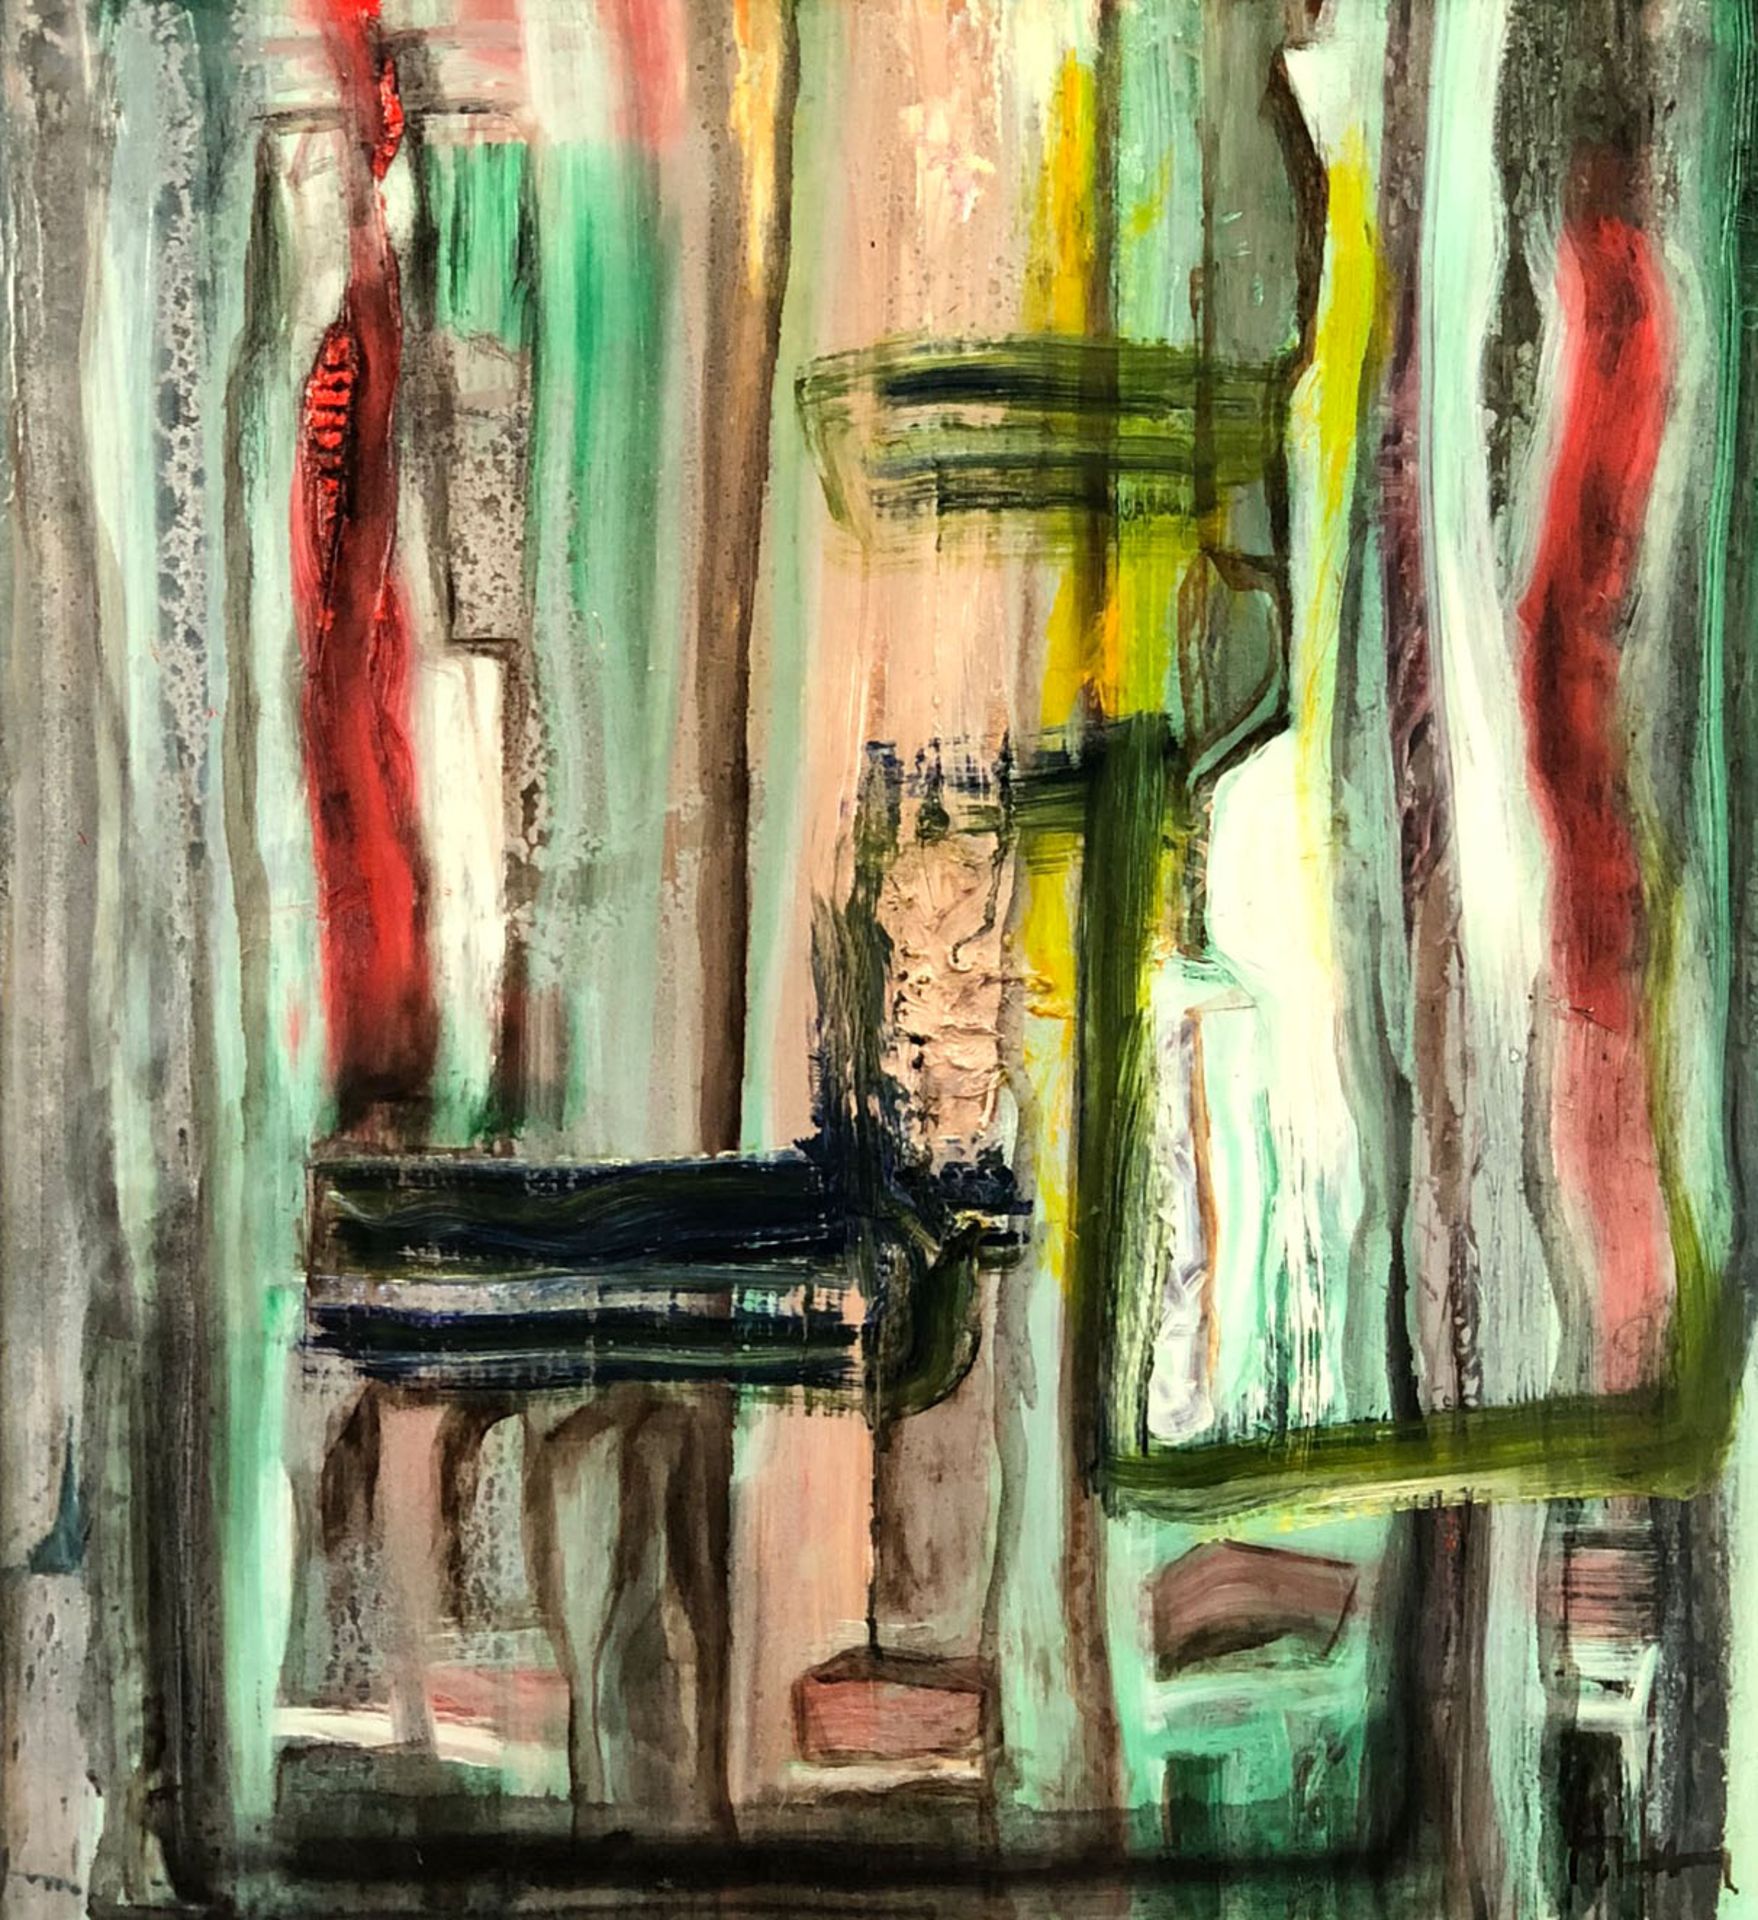 Herbert WEYL (1923 - 1998). Ohne Titel. 1991.66 cm x 61 cm. Gemälde. Öl auf Hartfaserplatte.